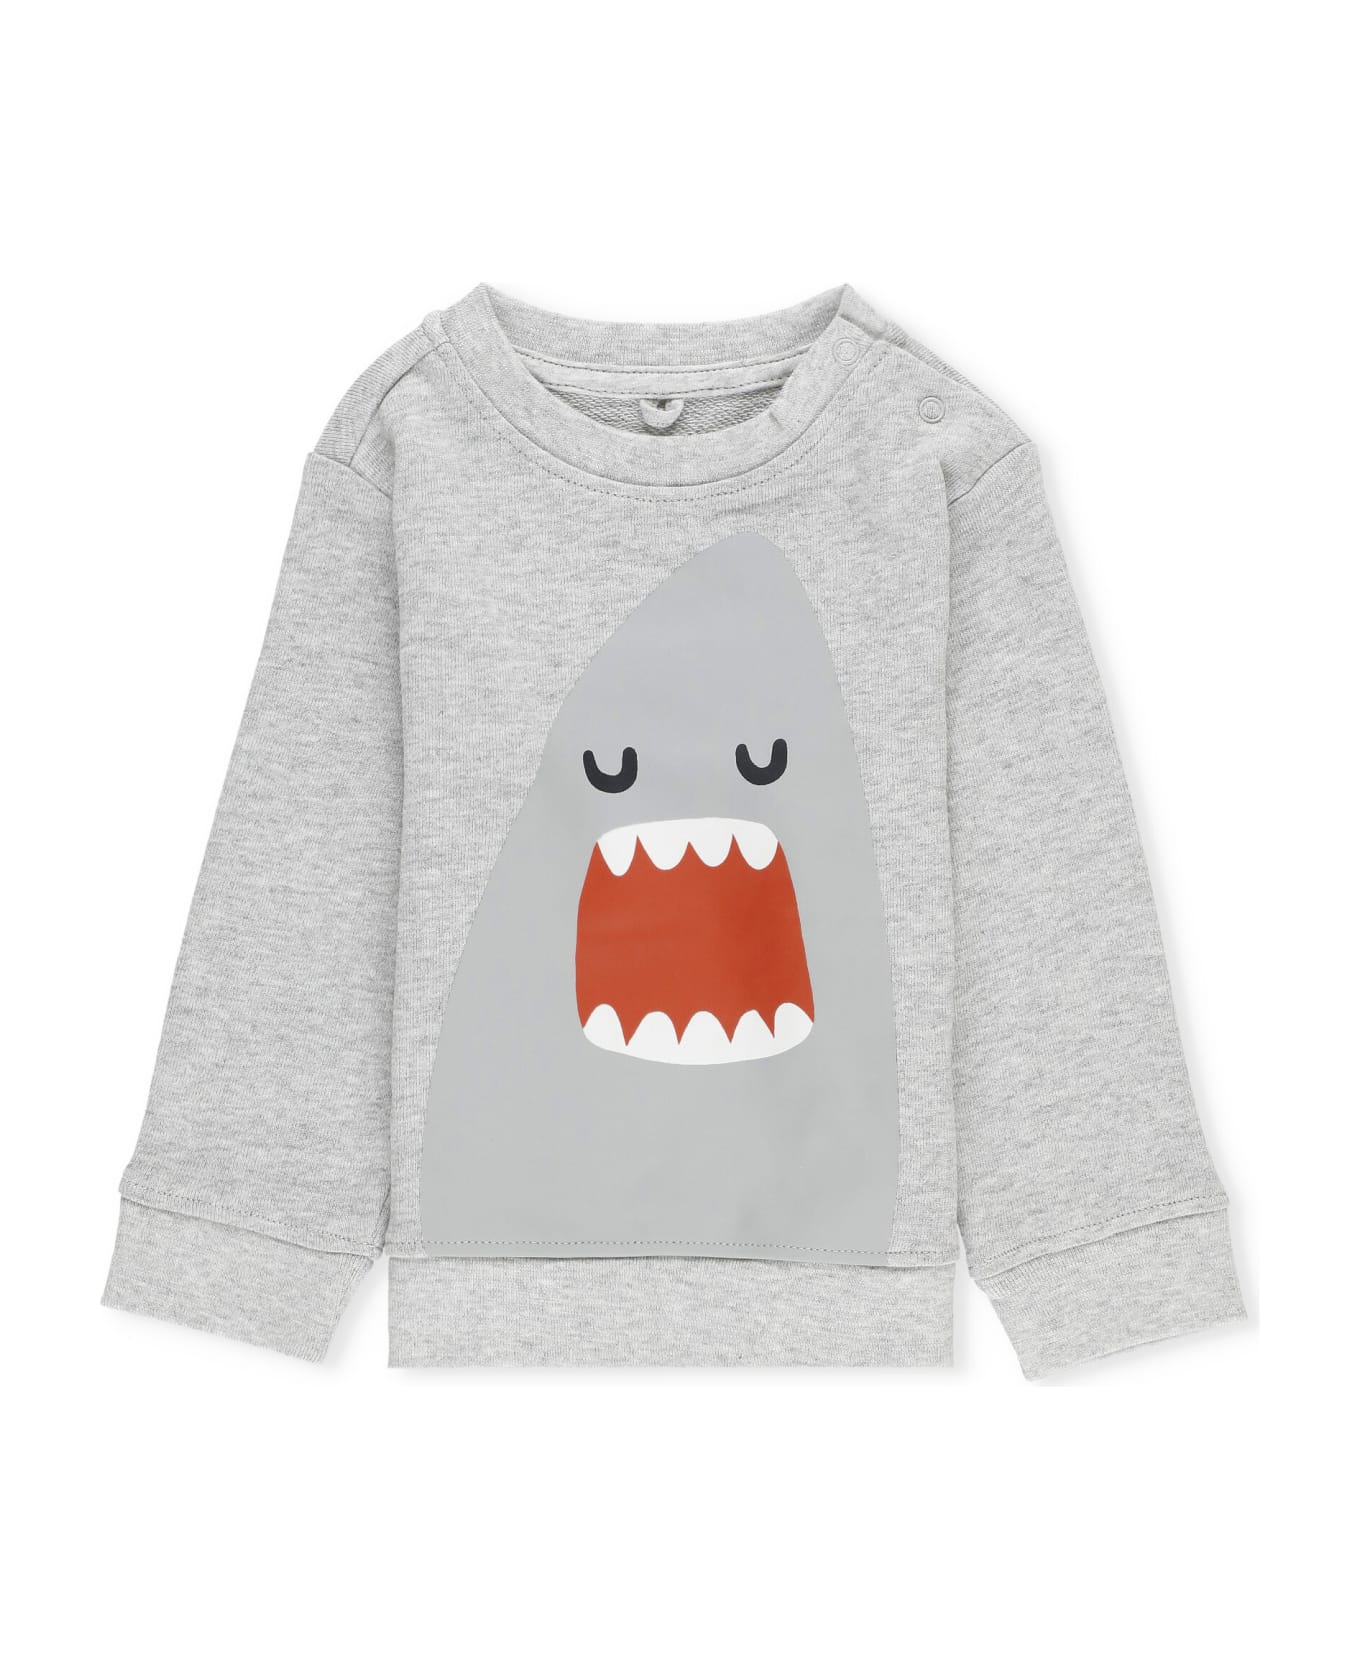 Stella McCartney Kids Sweatshirt With Print - Grey ニットウェア＆スウェットシャツ